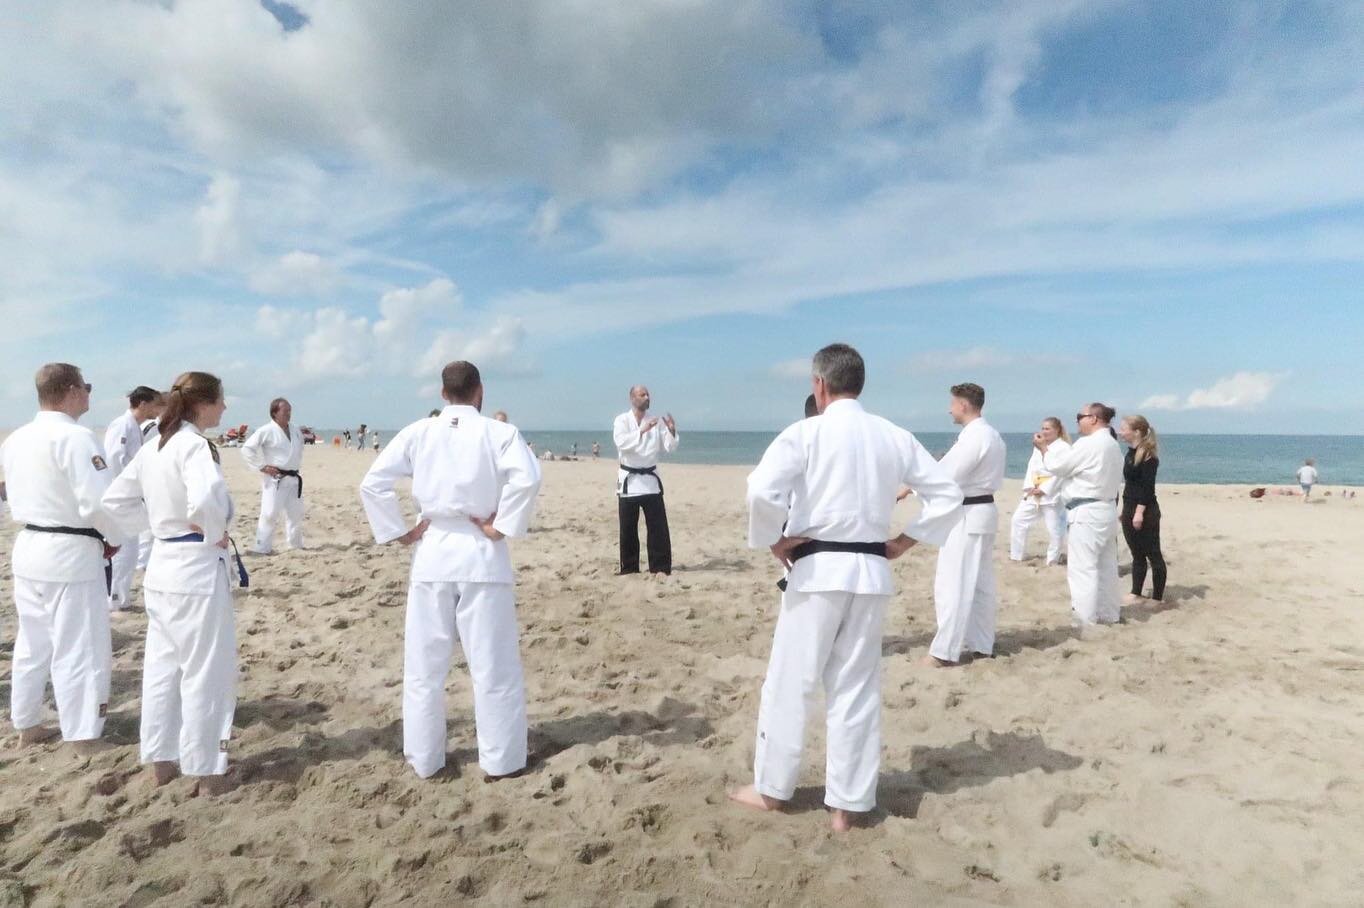 Was weer een geweldige ervaring om bij de JBN Jiu jitsu strandtraining te trainen en aan les te mogen geven.